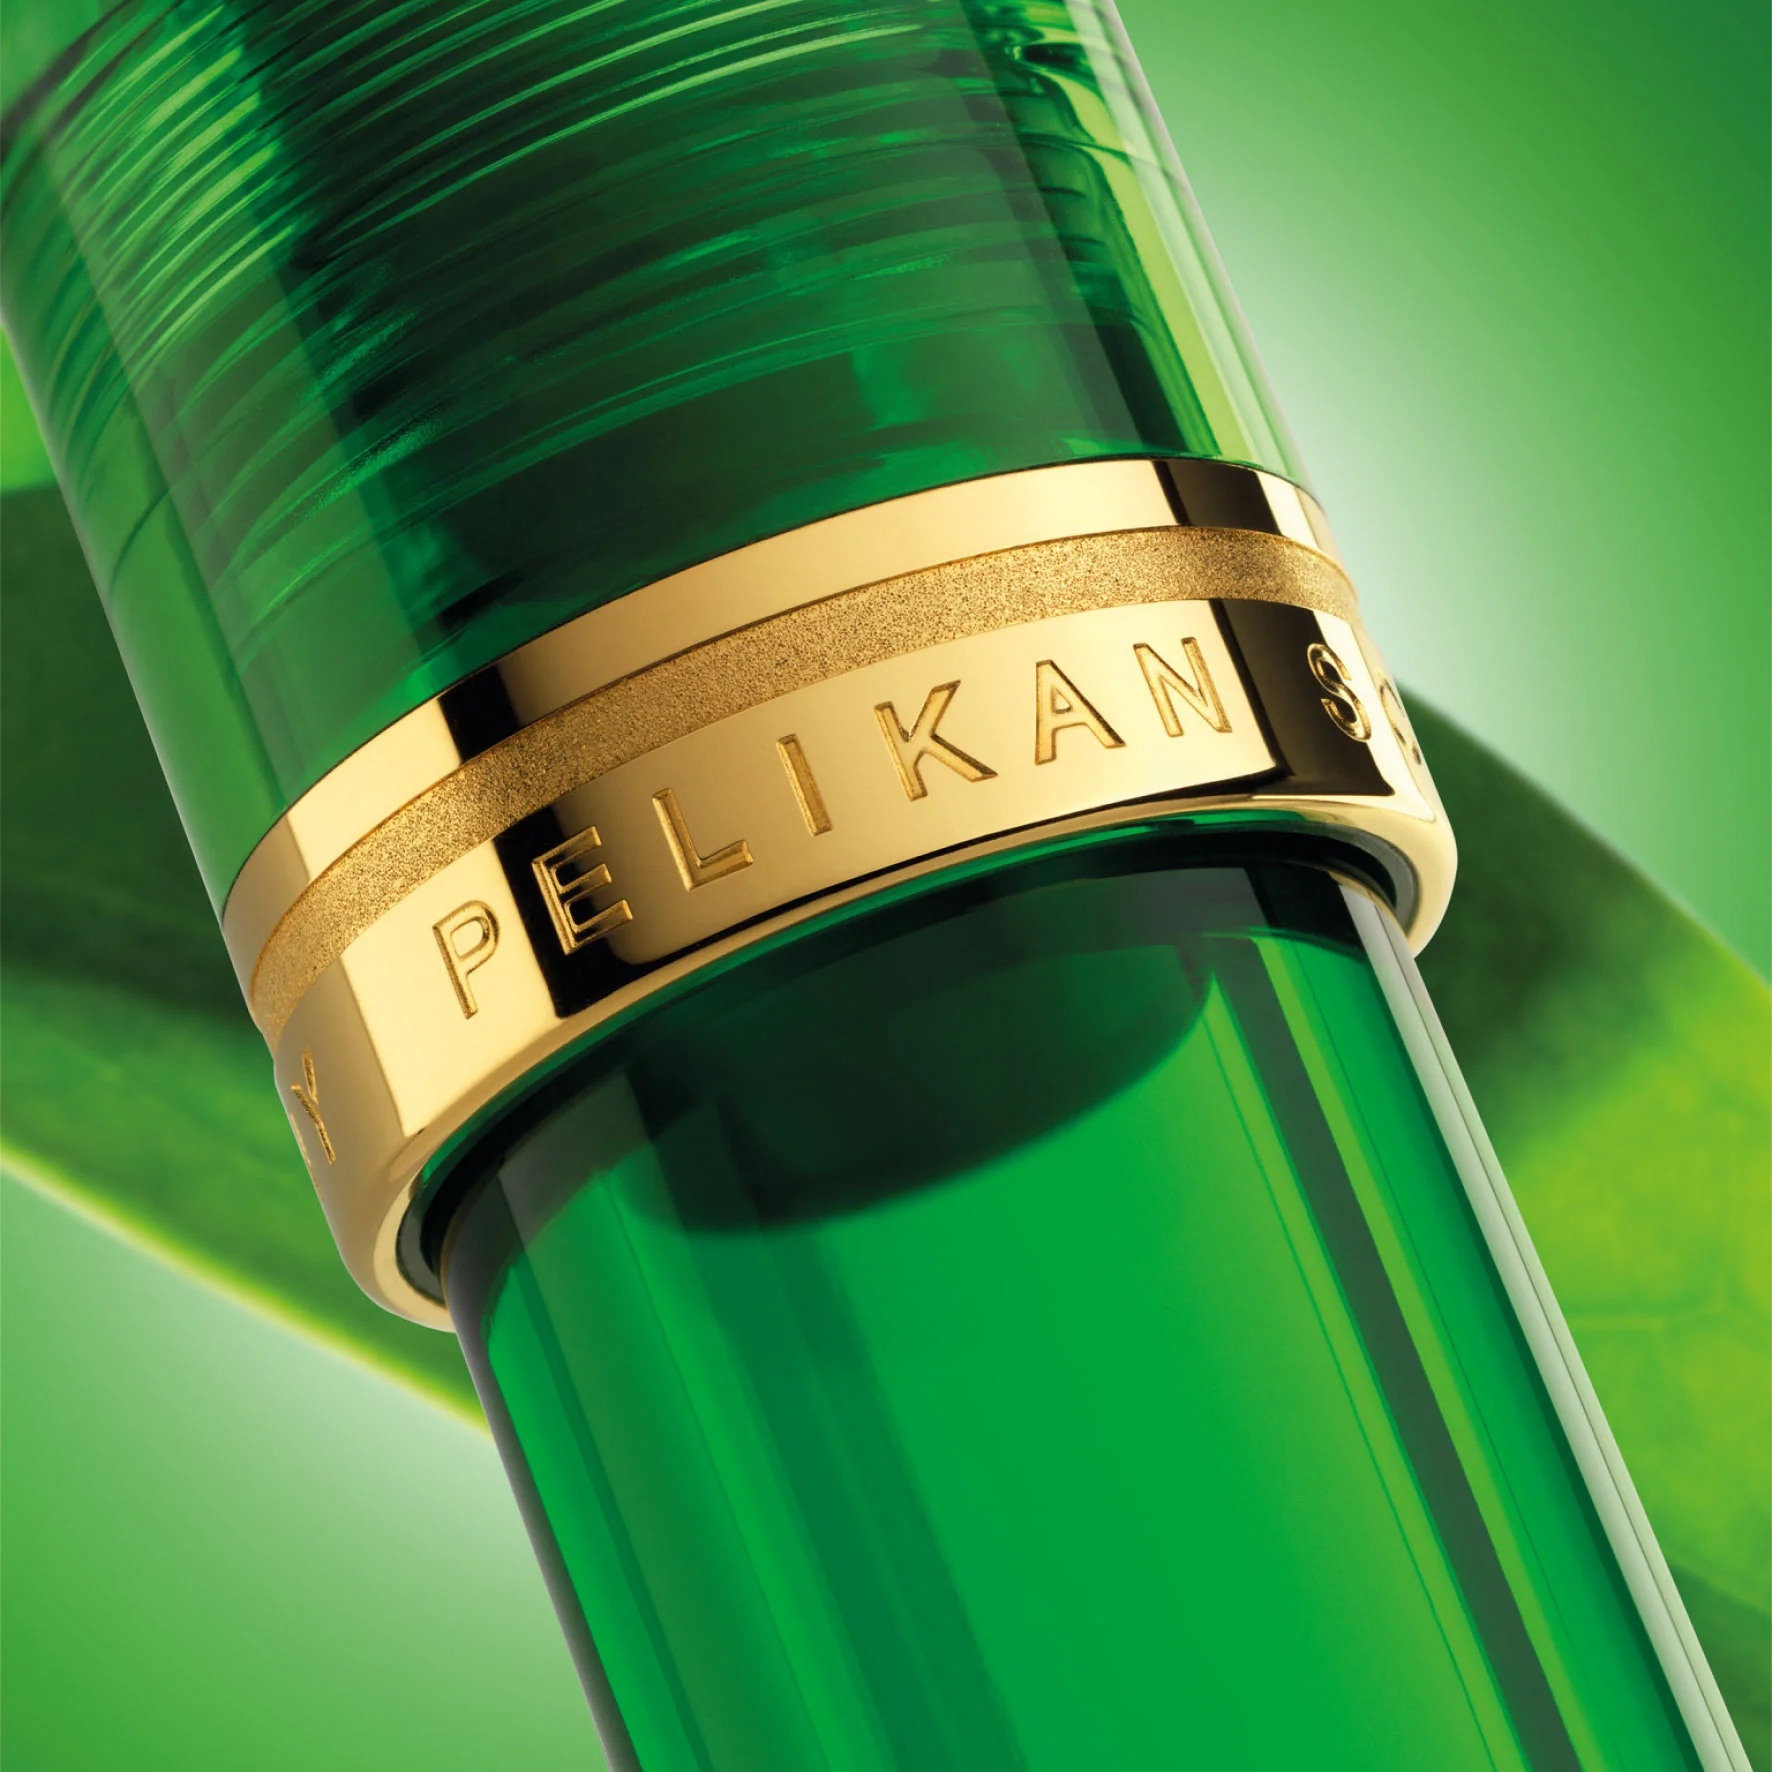 Pelikan Souverän M800 Green Demonstrator Fountain Pen - Pencraft the boutique